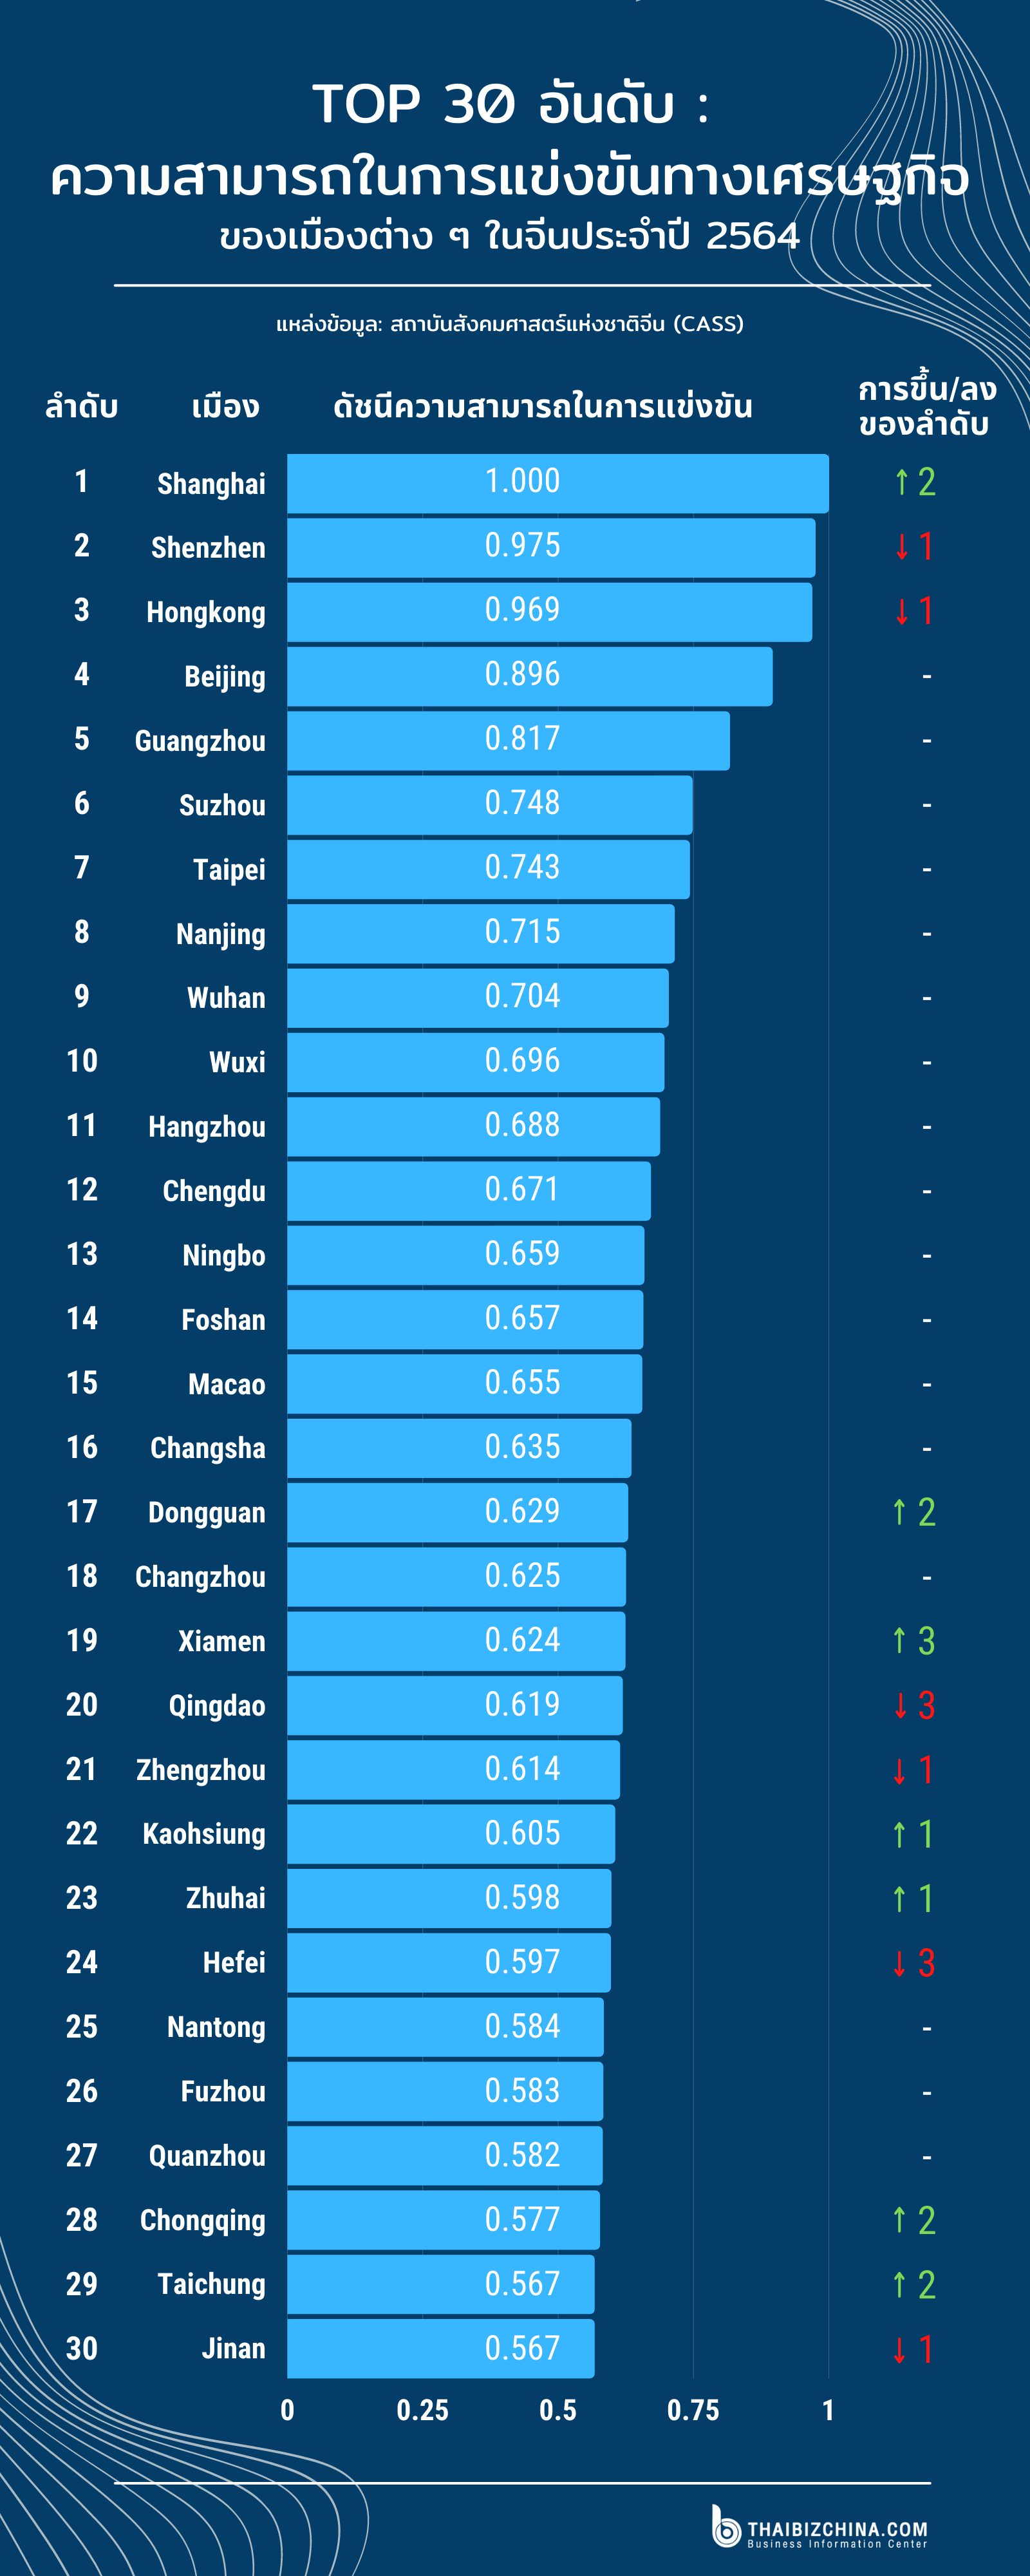 #EconDaily TOP 30 อันดับ ความสามรถในการแข่งขันทางเศรษฐกิจของเมืองต่าง ๆ ในจีนประจำปี 2564